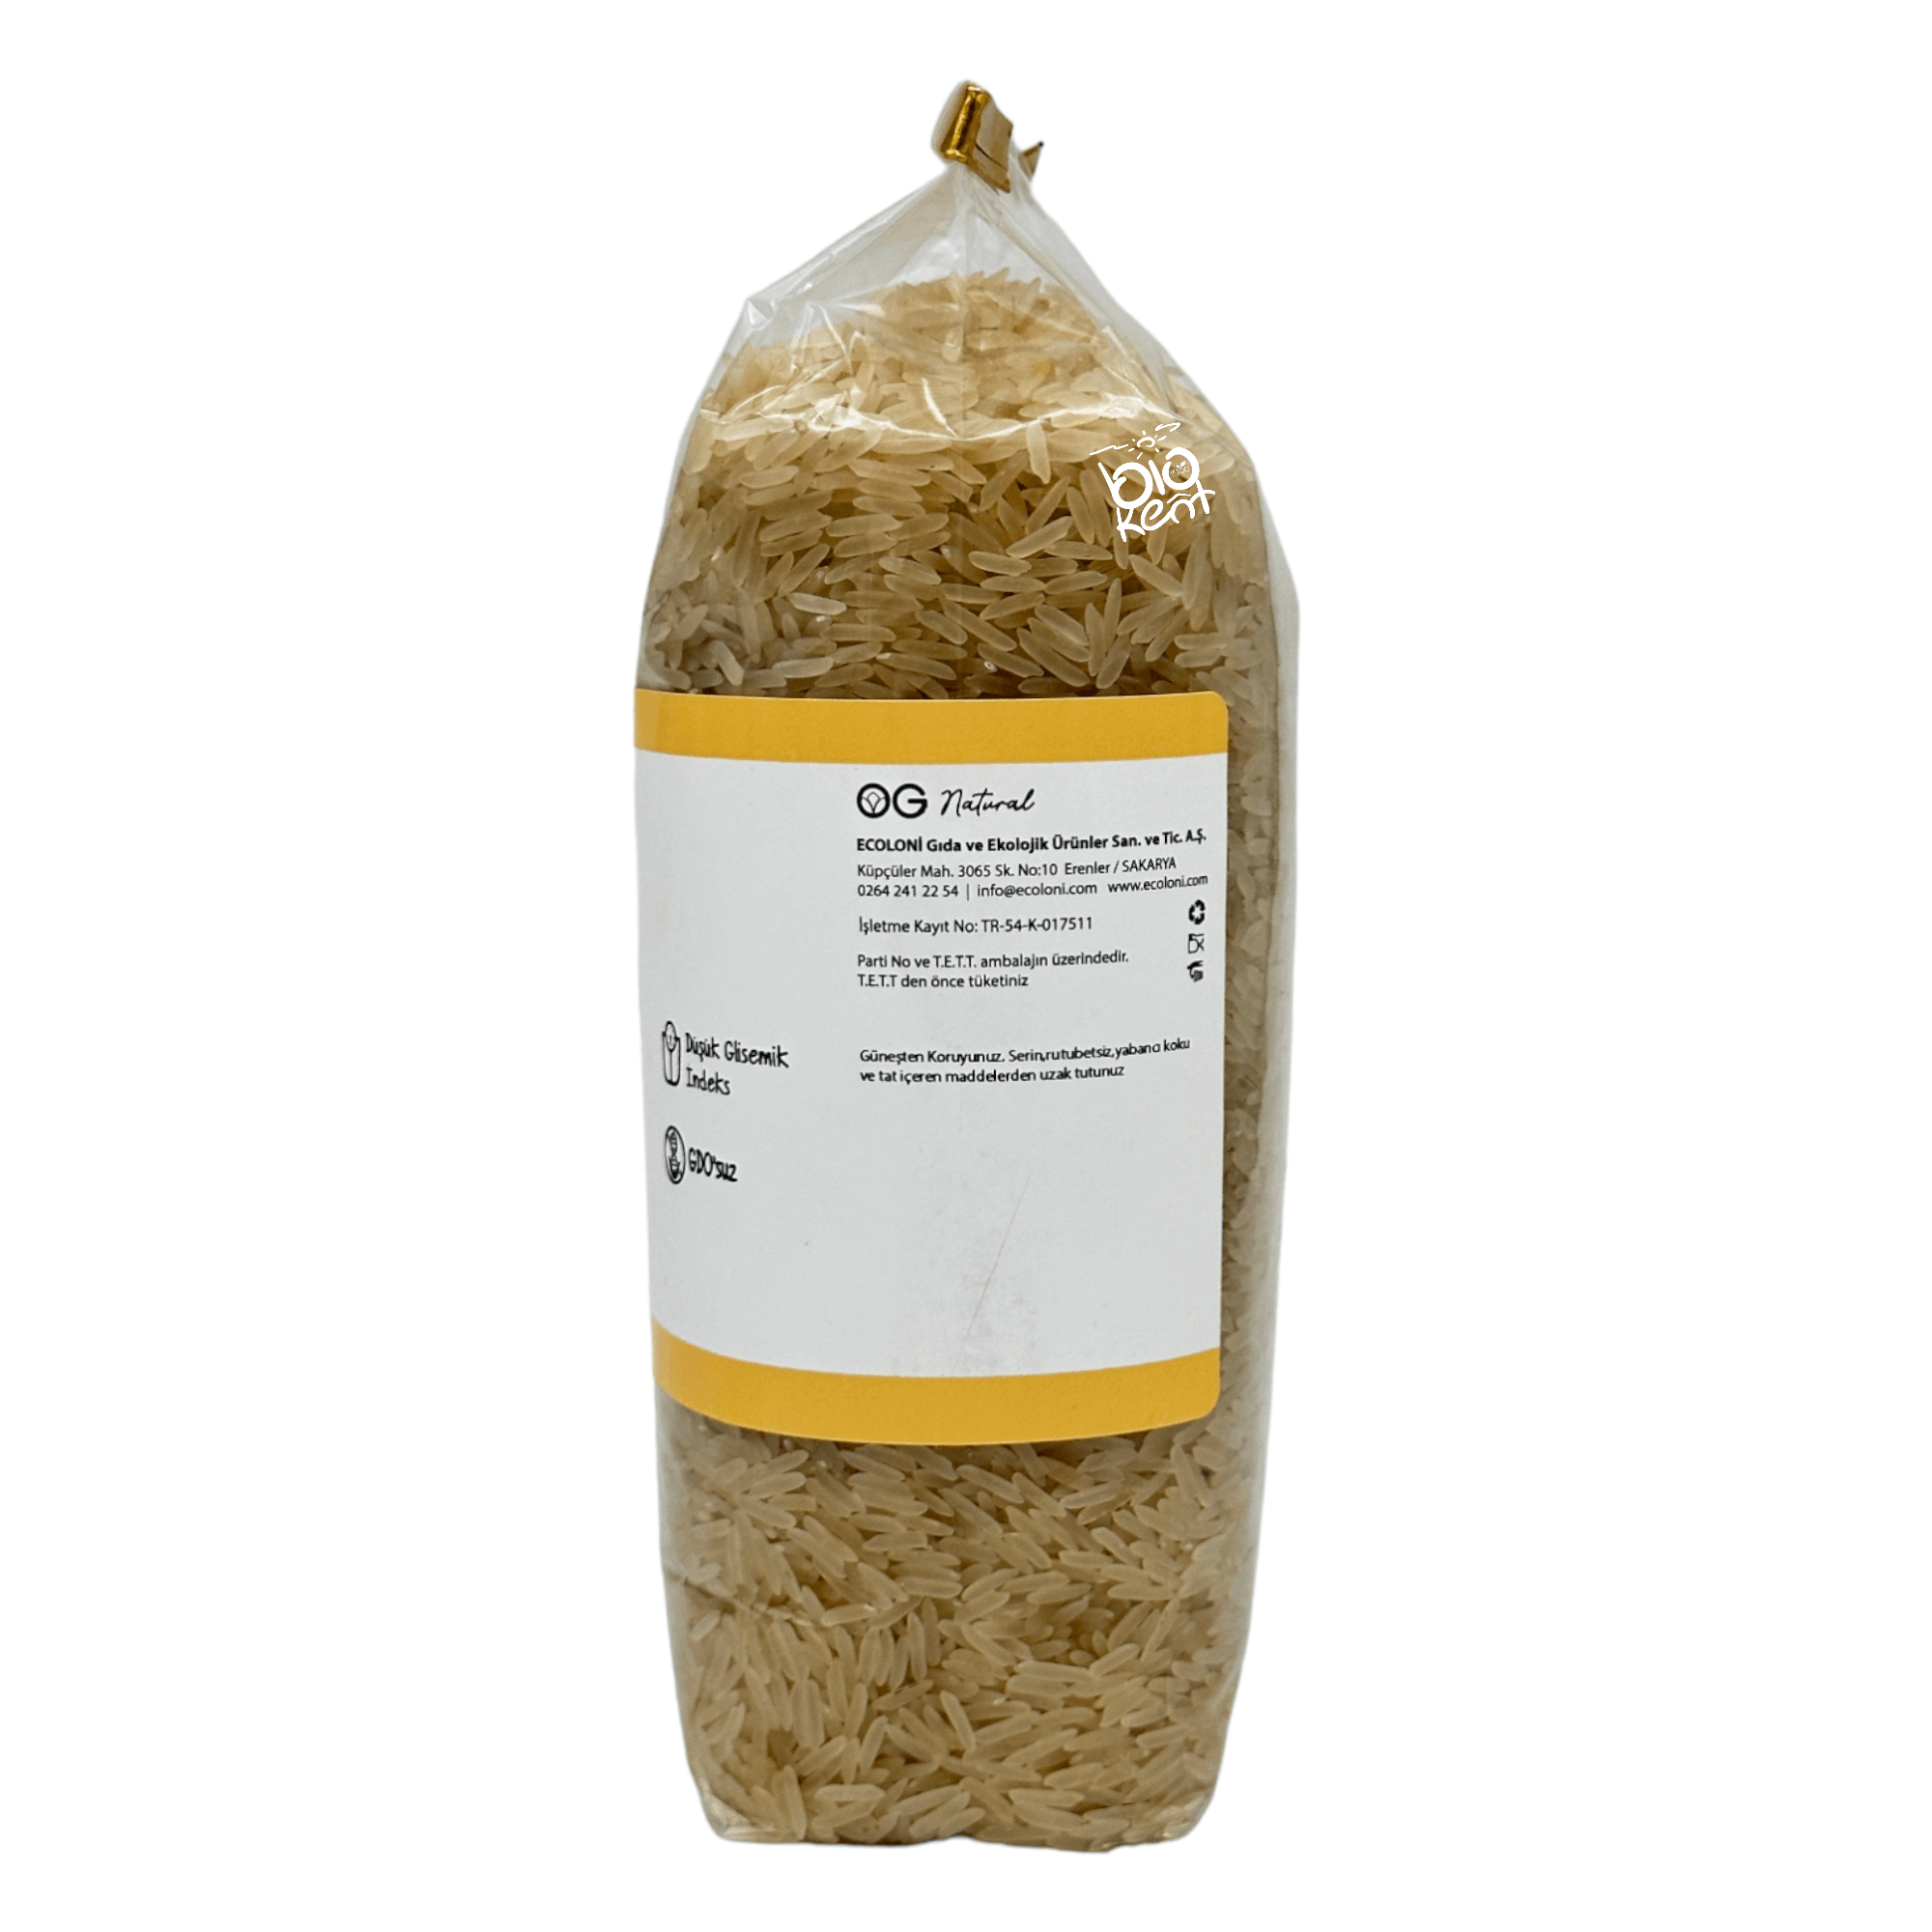 GDO İçermeyen Basmati Pirinç 800gr